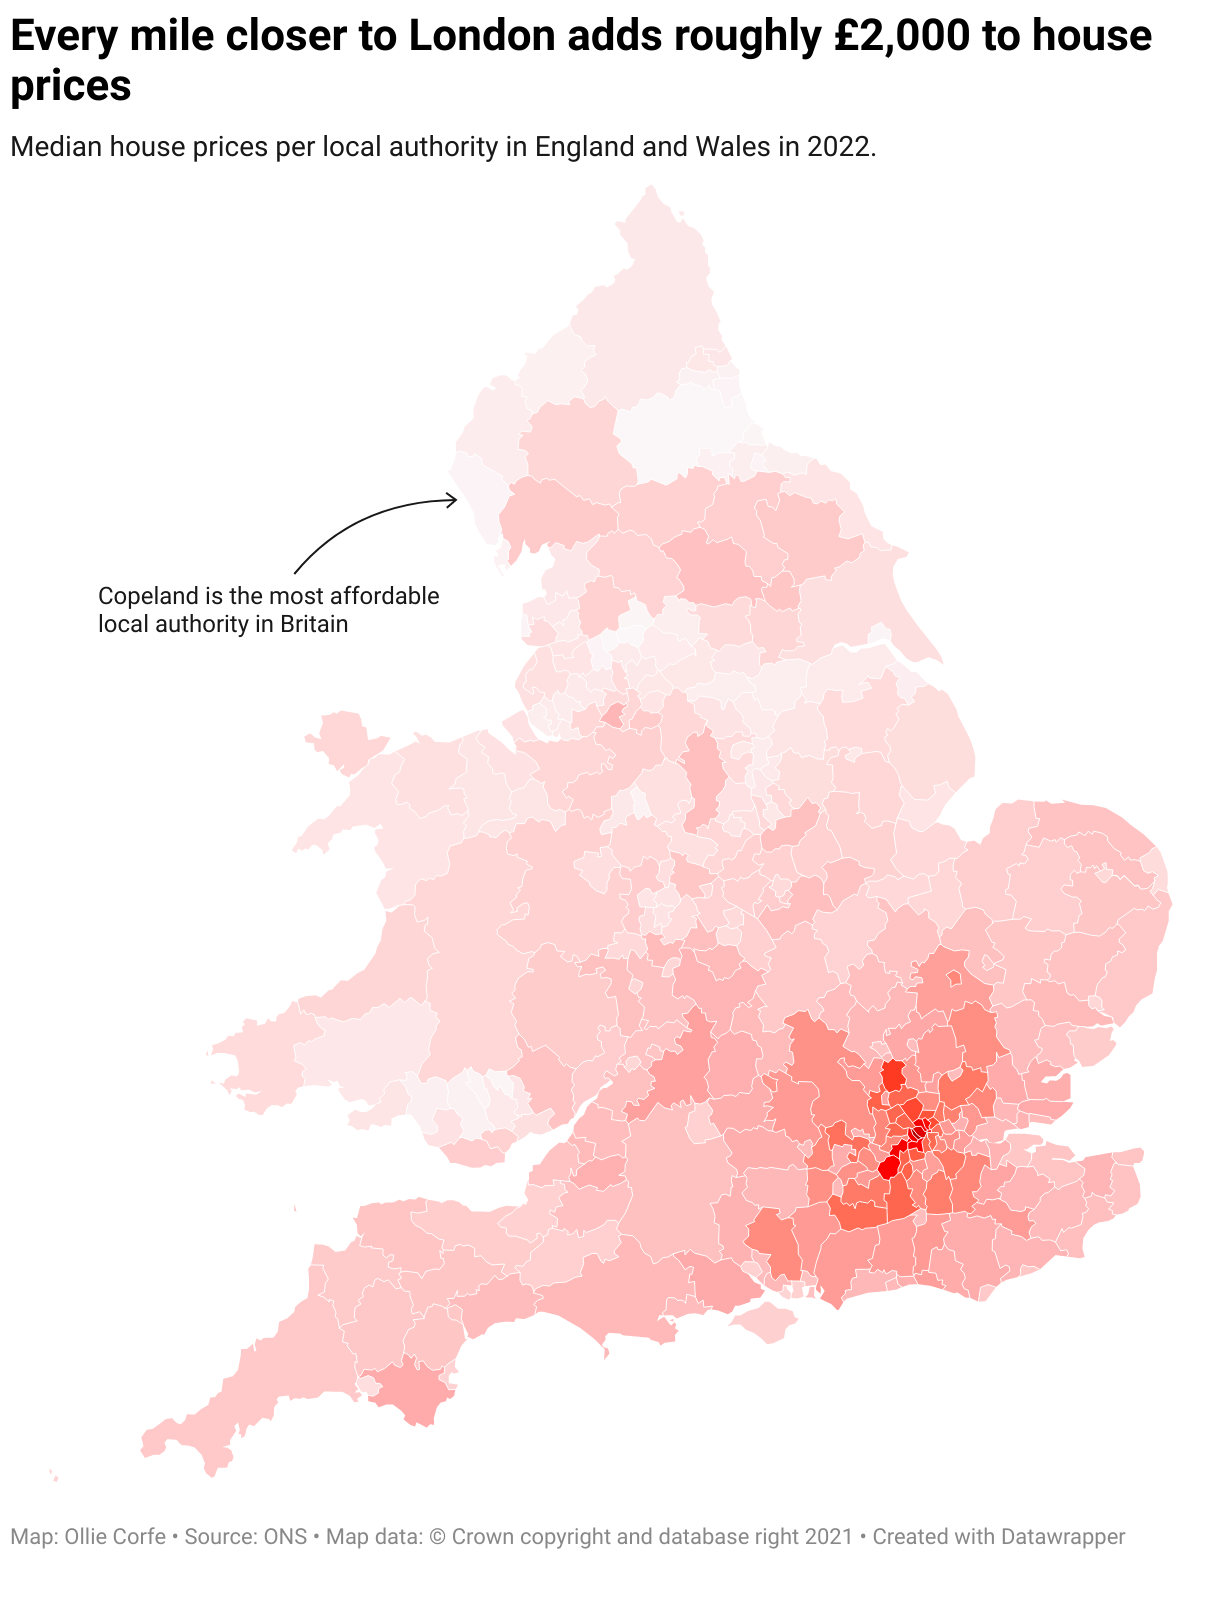 Mittlere Immobilienpreise pro Gemeinde in Großbritannien.